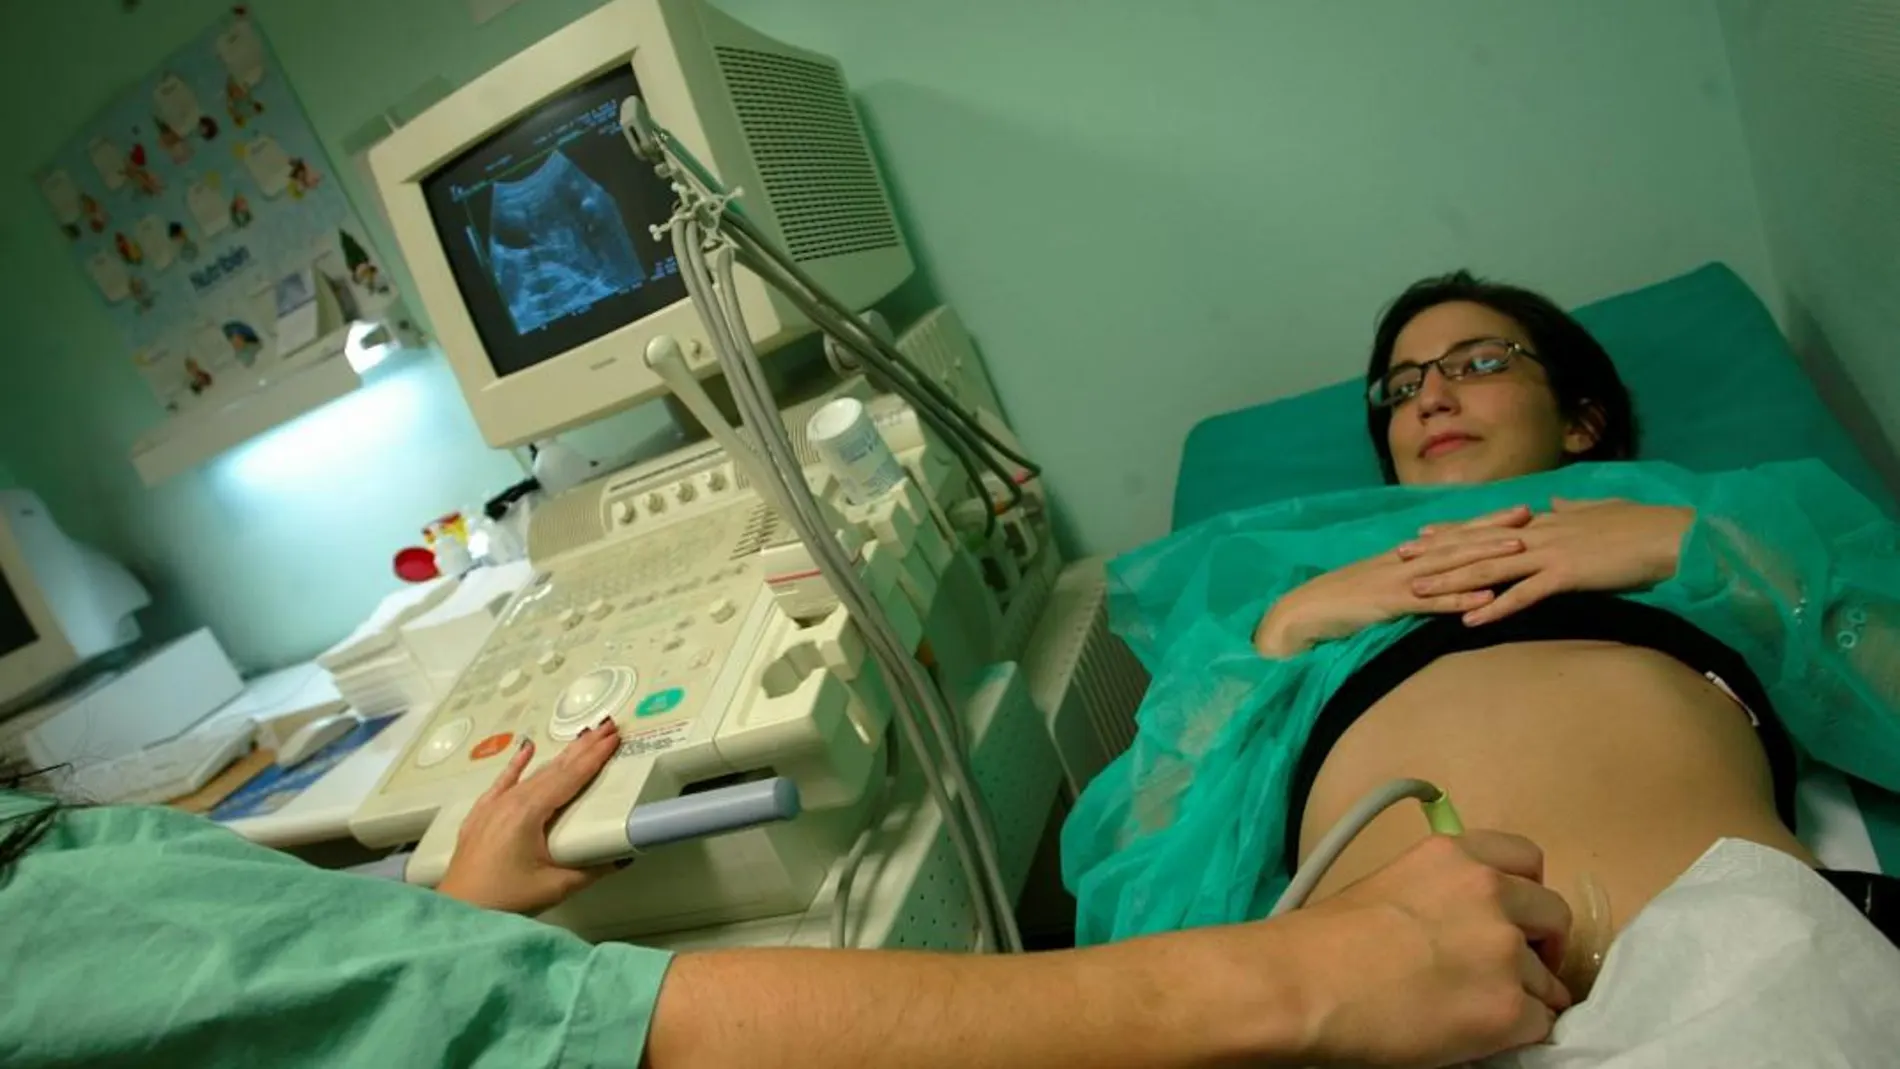 Una mujer, embarazada mediante tratamiento de reproducción asistida, se realiza una ecografía para comprobar la correcta evolución de su futuro hijo